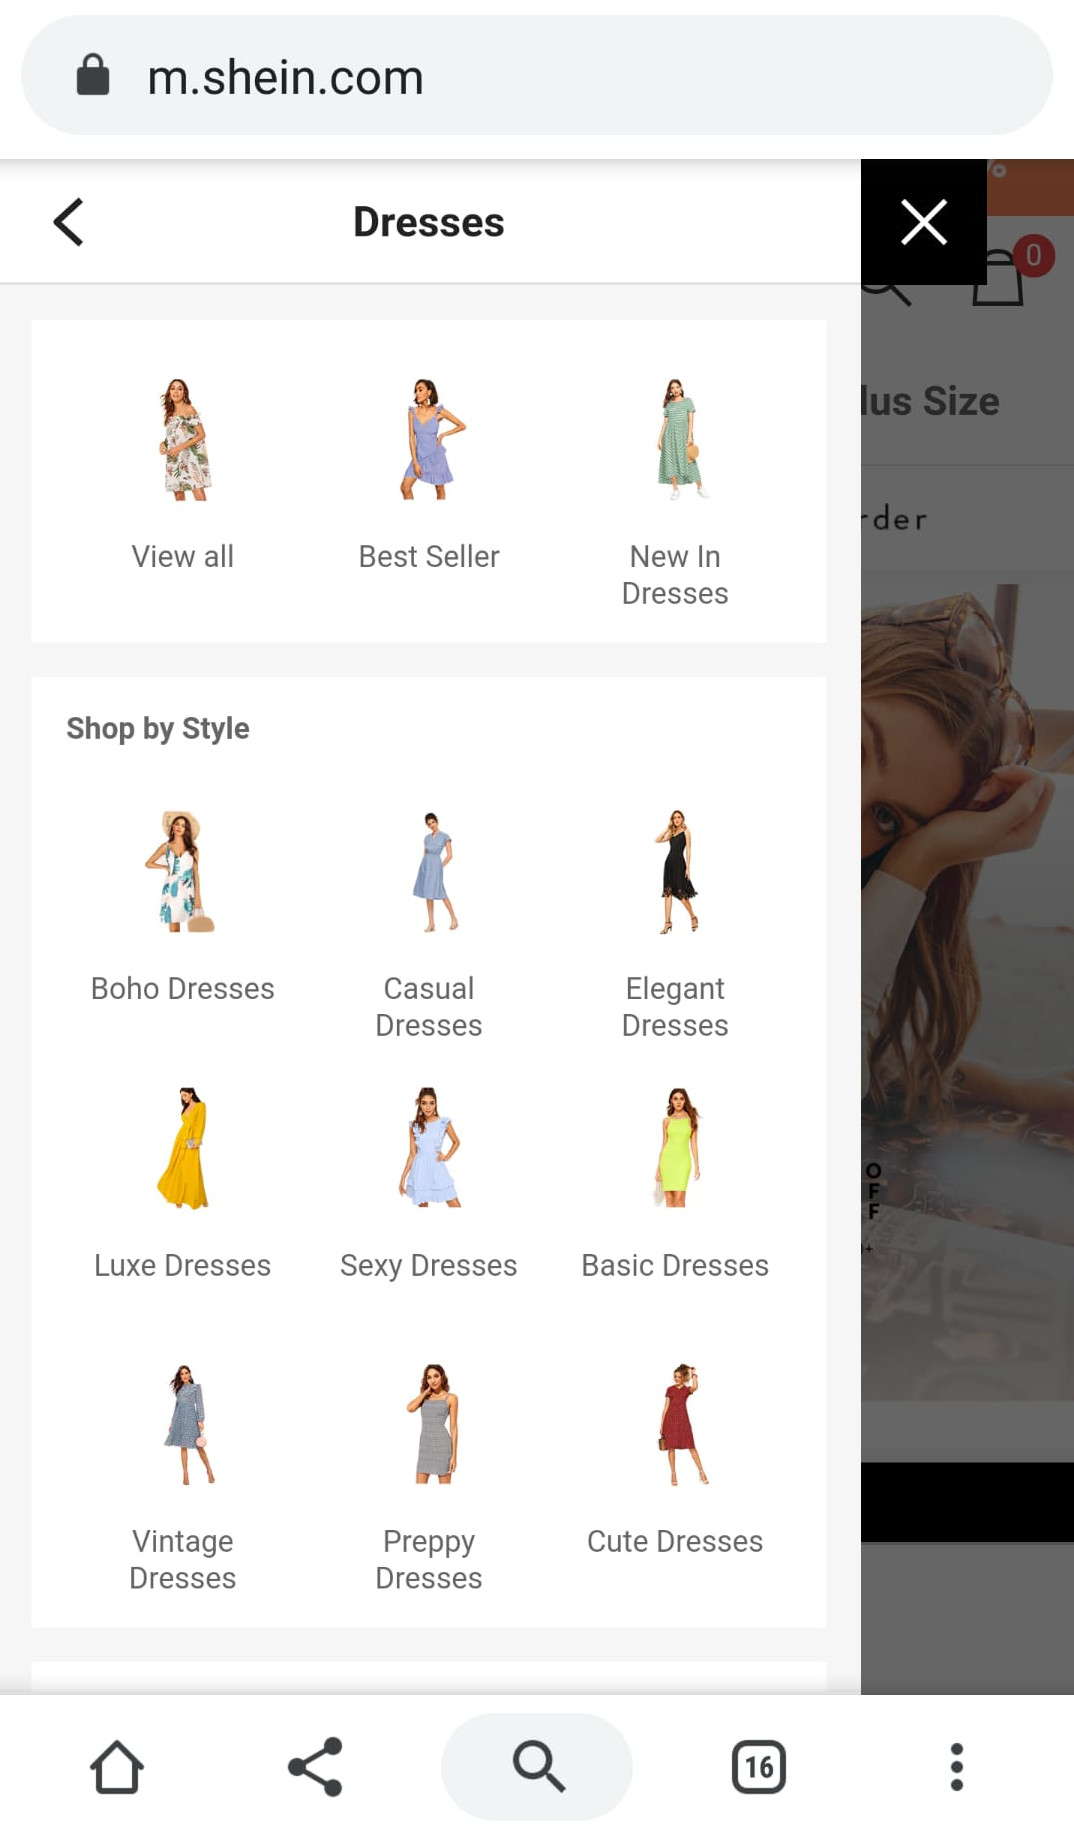 Chinesische Online-Fashionhändler im Test, die kleinen Bilder in der Navigation machen das Einkaufen intuitiver